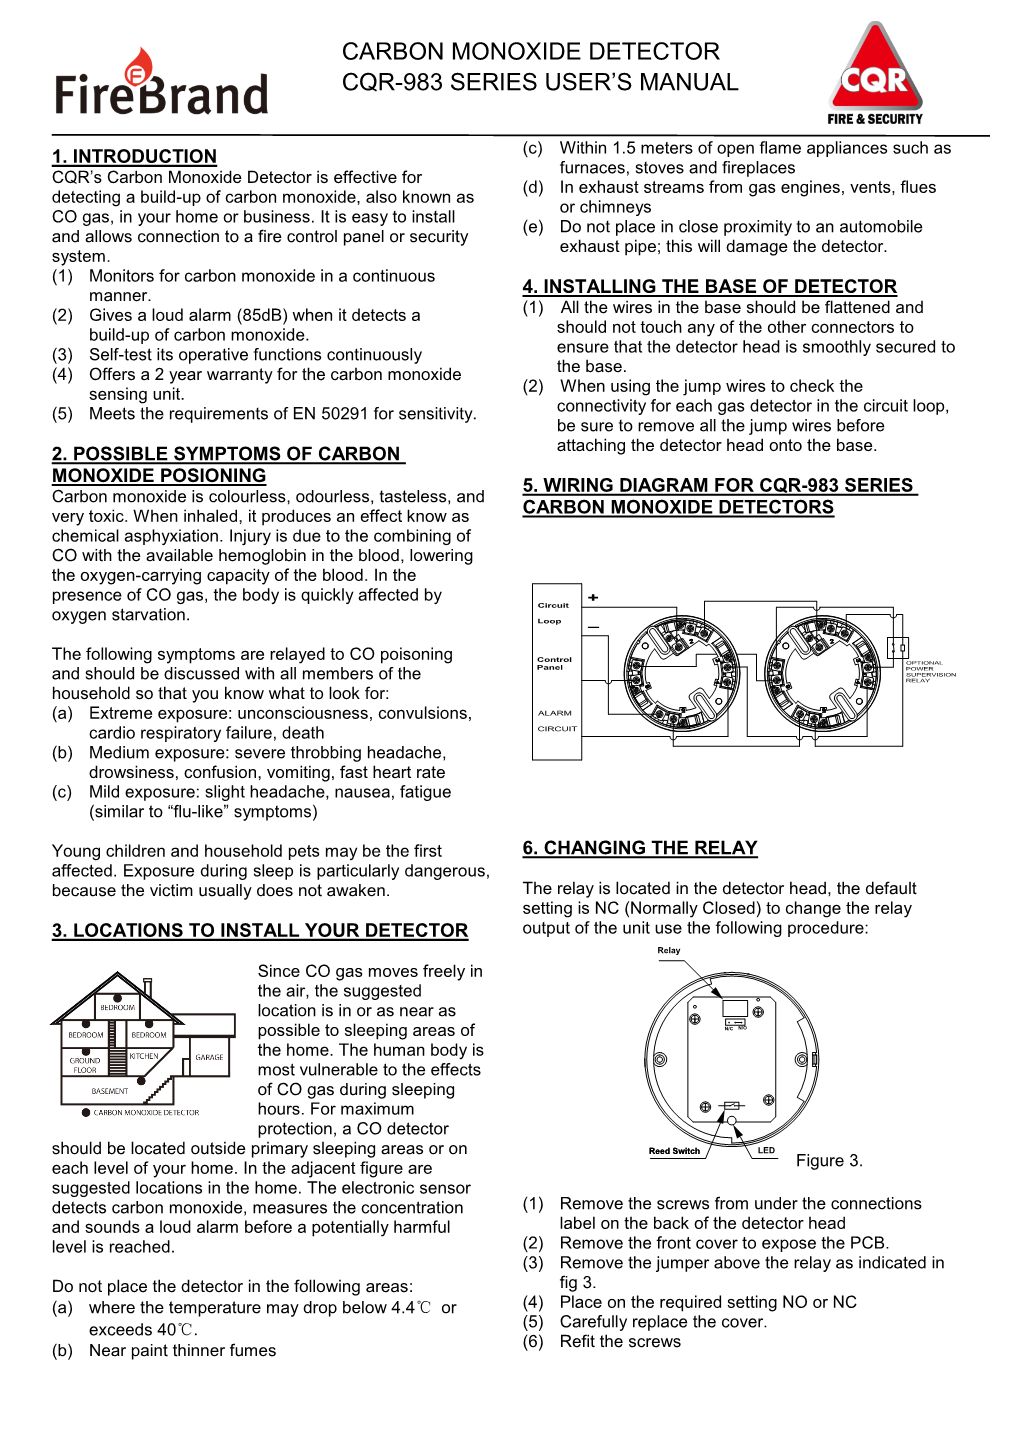 Carbon Monoxide Detector Cqr-983 Series User's Manual